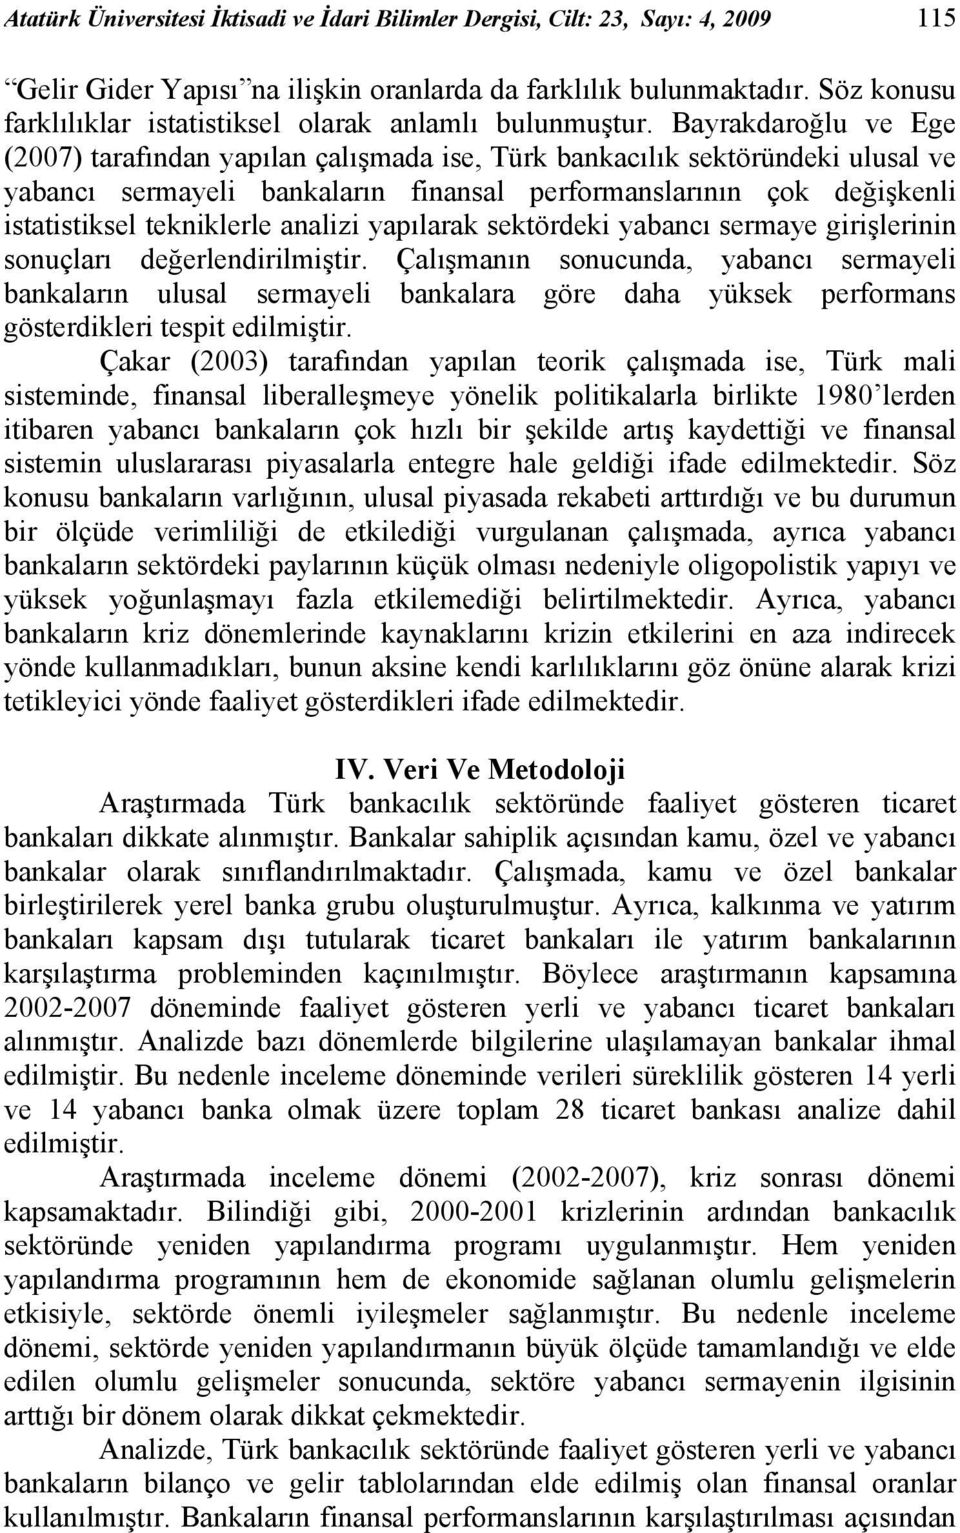 Bayrakdaroğlu ve Ege (2007) tarafından yapılan çalışmada ise, Türk bankacılık sektöründeki ulusal ve yabancı sermayeli bankaların finansal performanslarının çok değişkenli istatistiksel tekniklerle